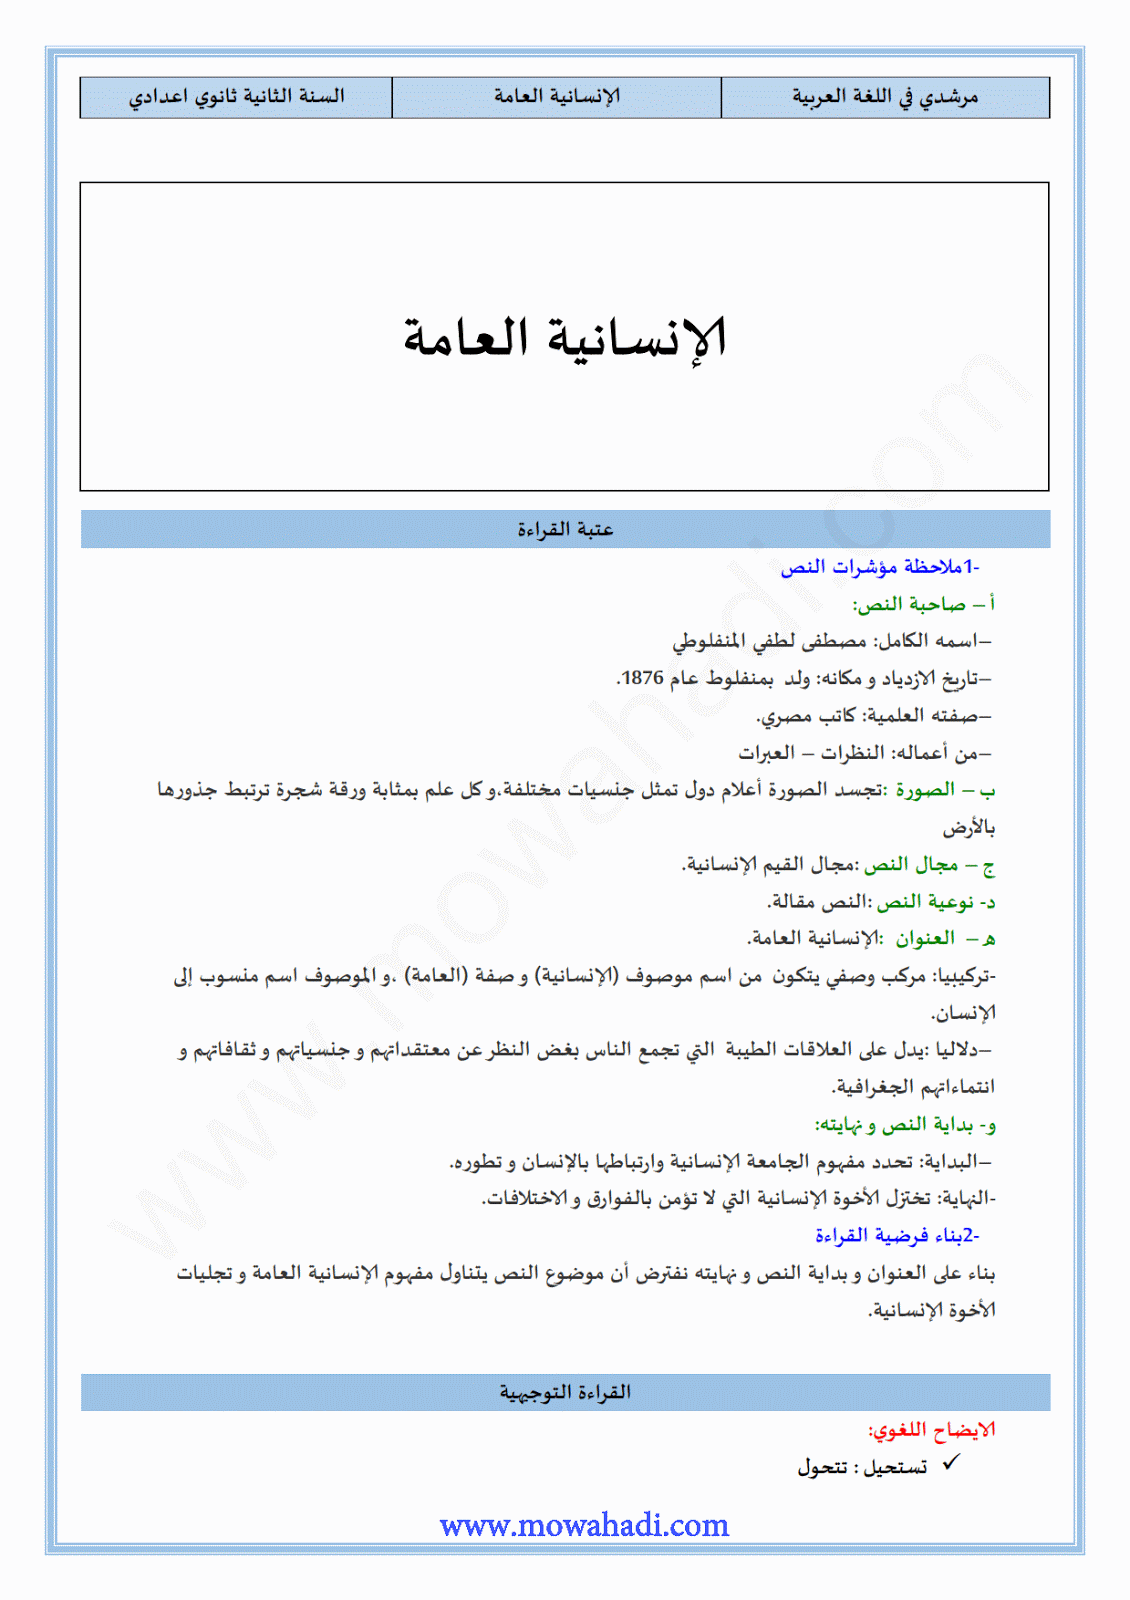 تحضير النص القرائي الإنسانية العامة  للسنة الثانية اعدادي في مادة اللغة العربية